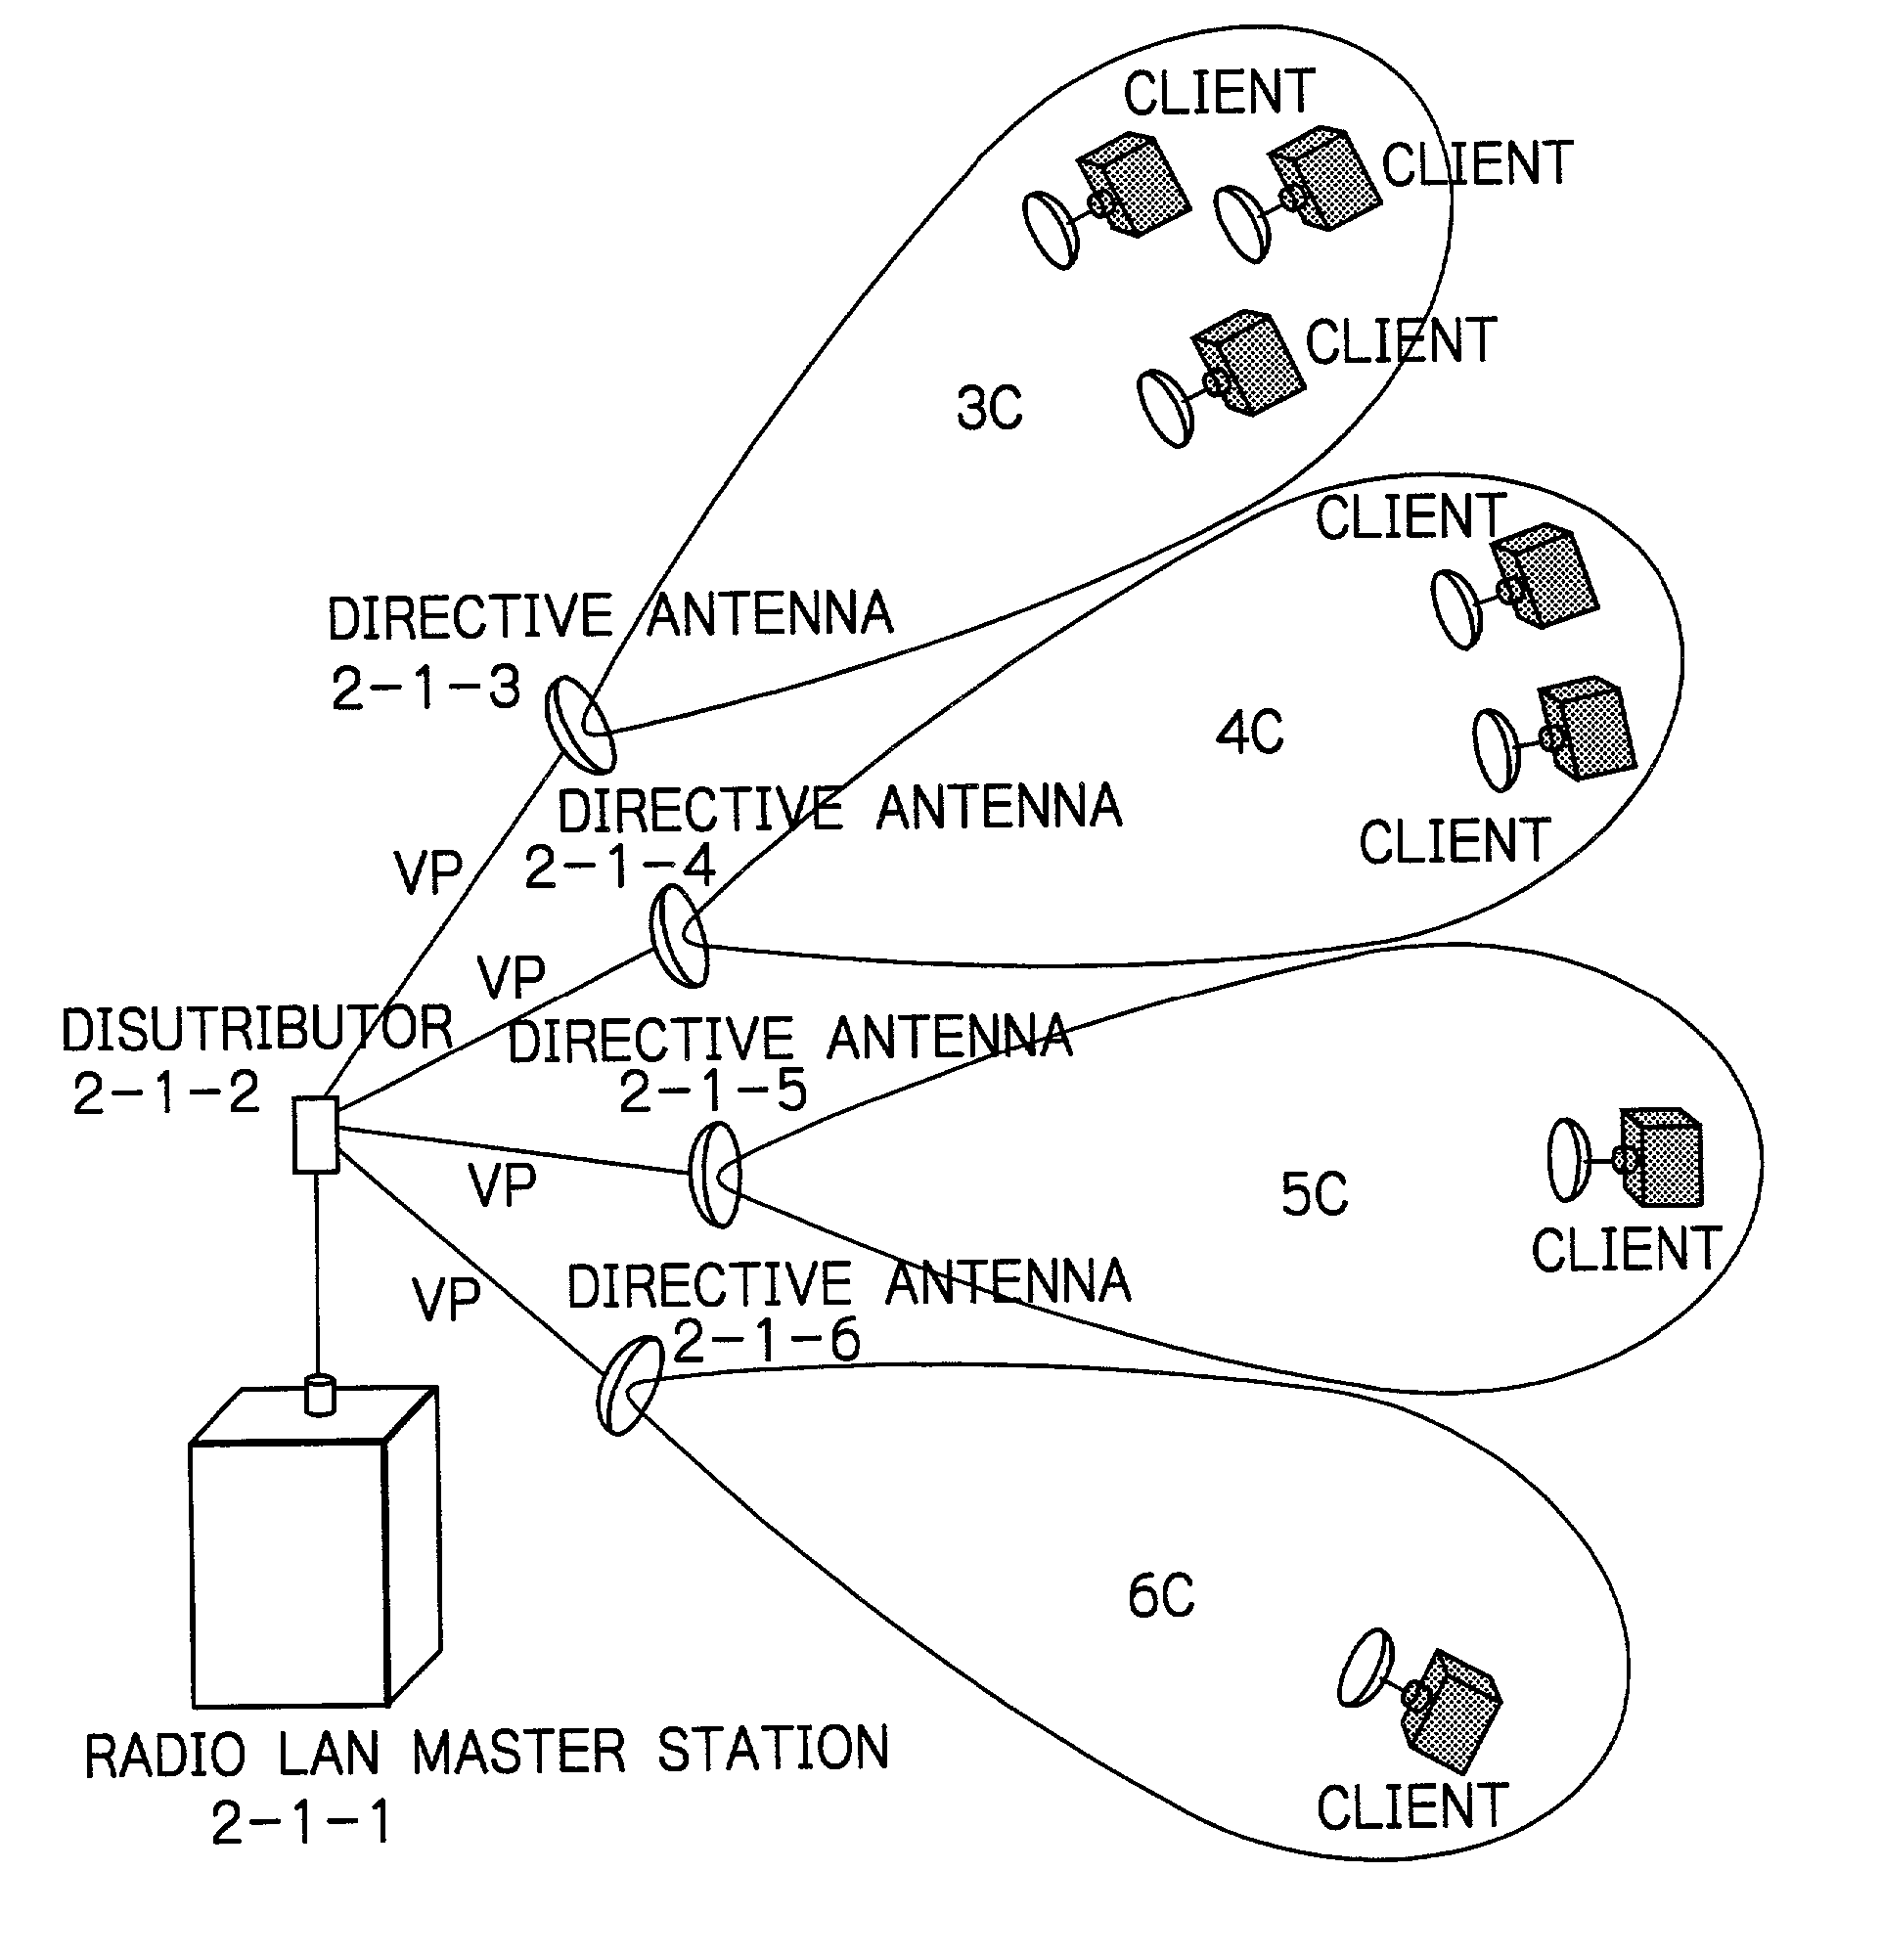 Radio LAN master station system